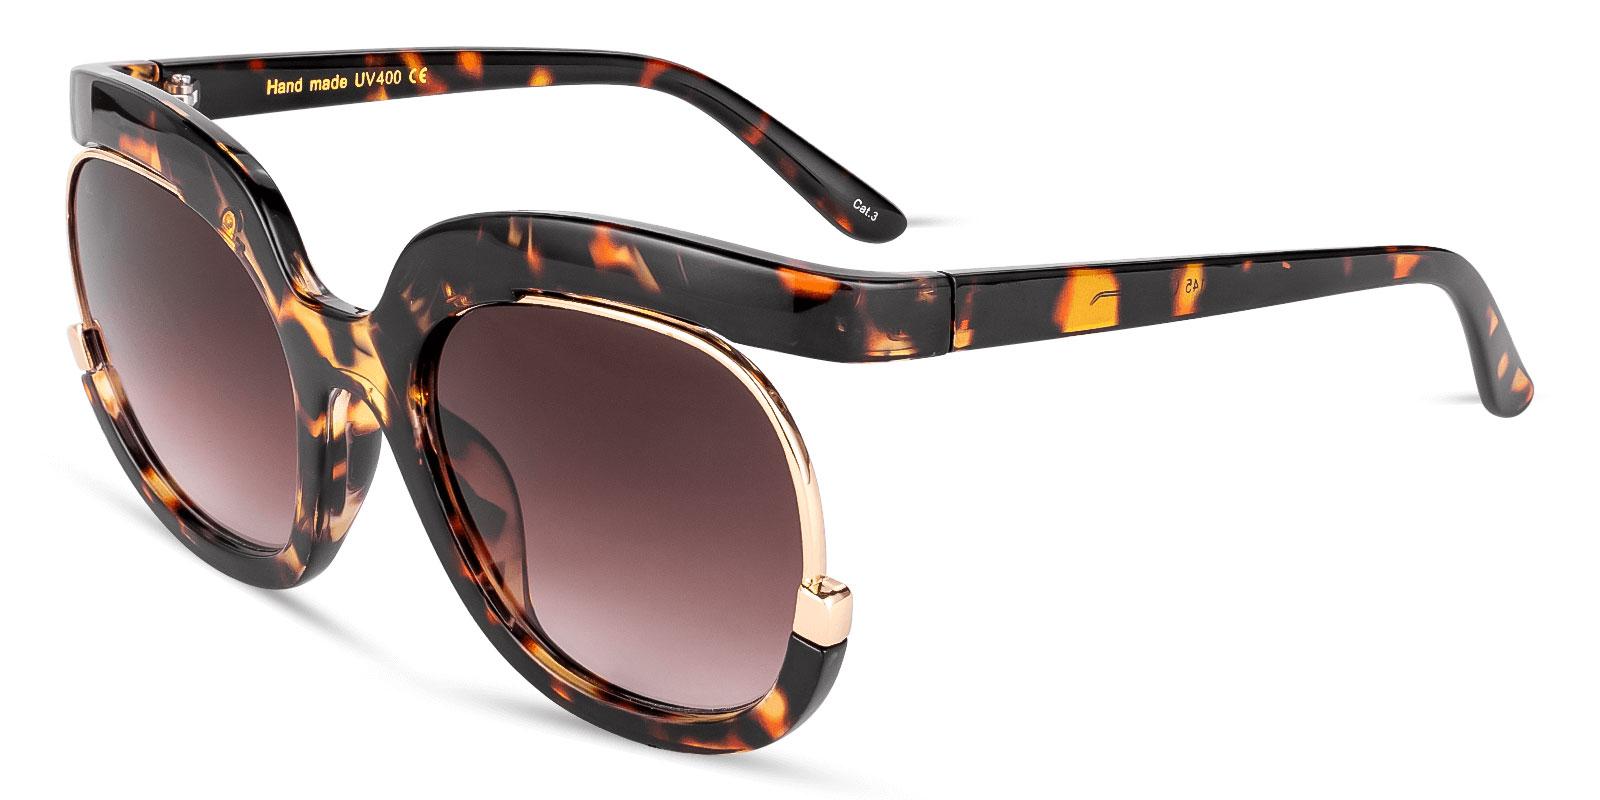 Samba Tortoise Plastic Fashion , Sunglasses Frames from ABBE Glasses